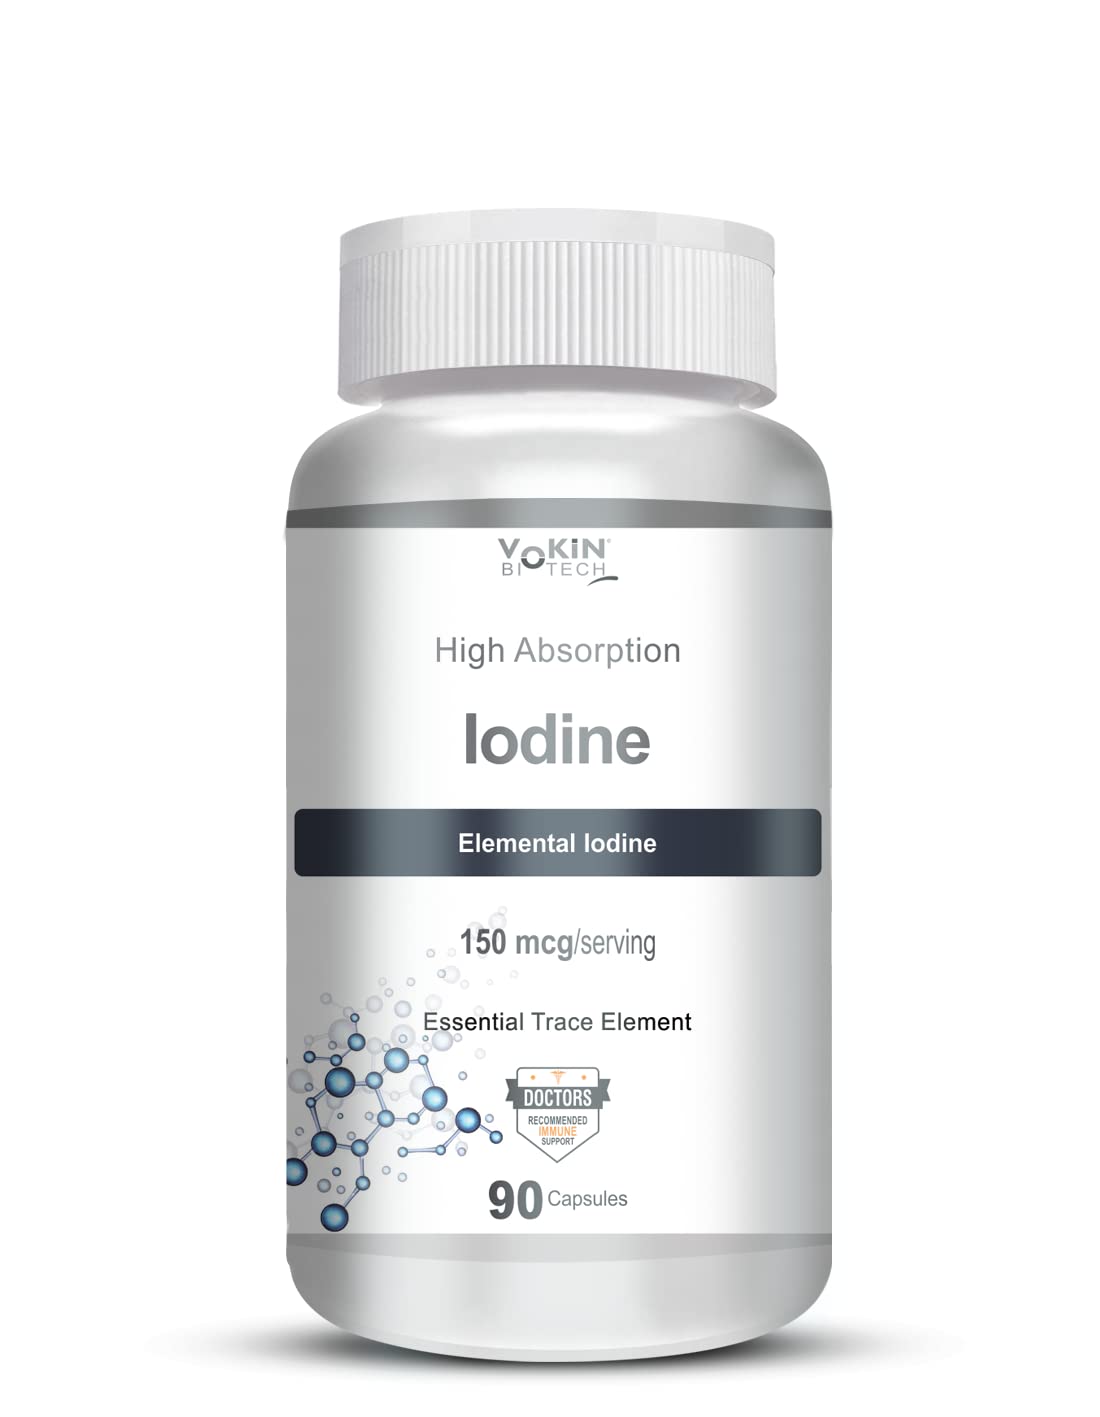 Vokin Biotech Iodine Supplement Image